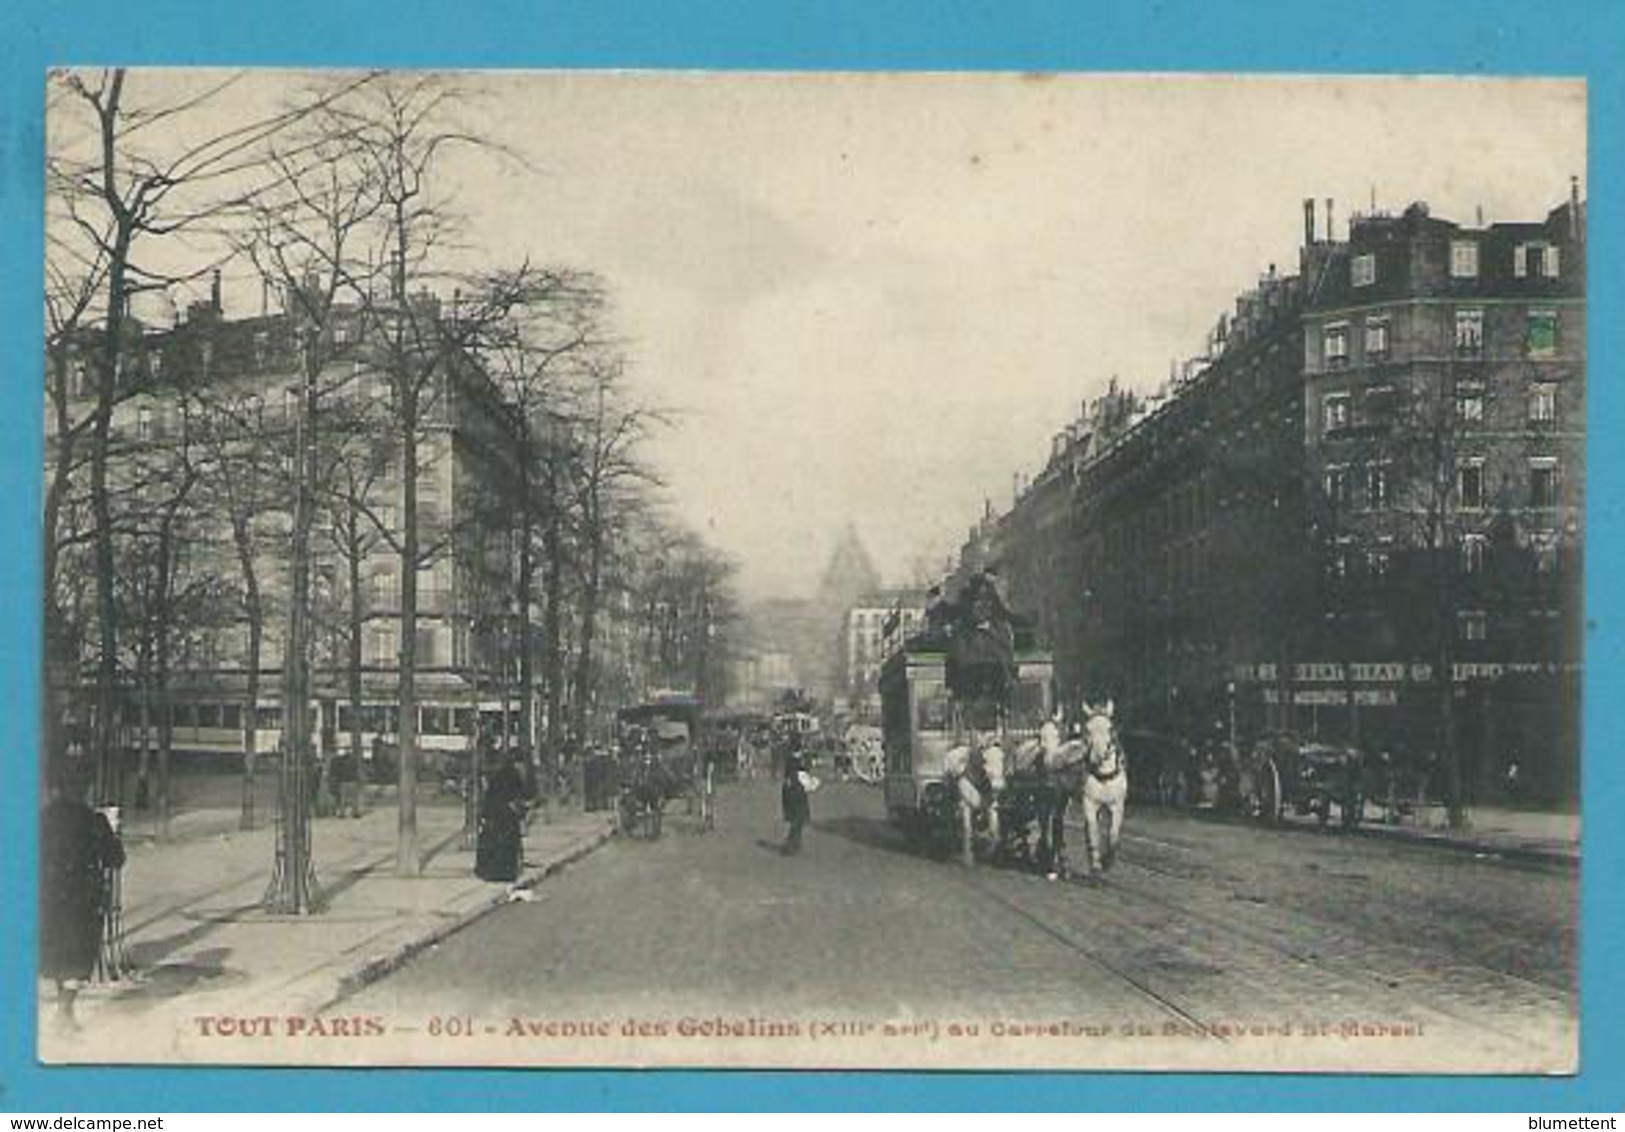 CPA TOUT PARIS 601 - Patache Attelage Avenue Des Gobelins Au Carrefour Du Bld St Marcel (XIIIème) - District 13